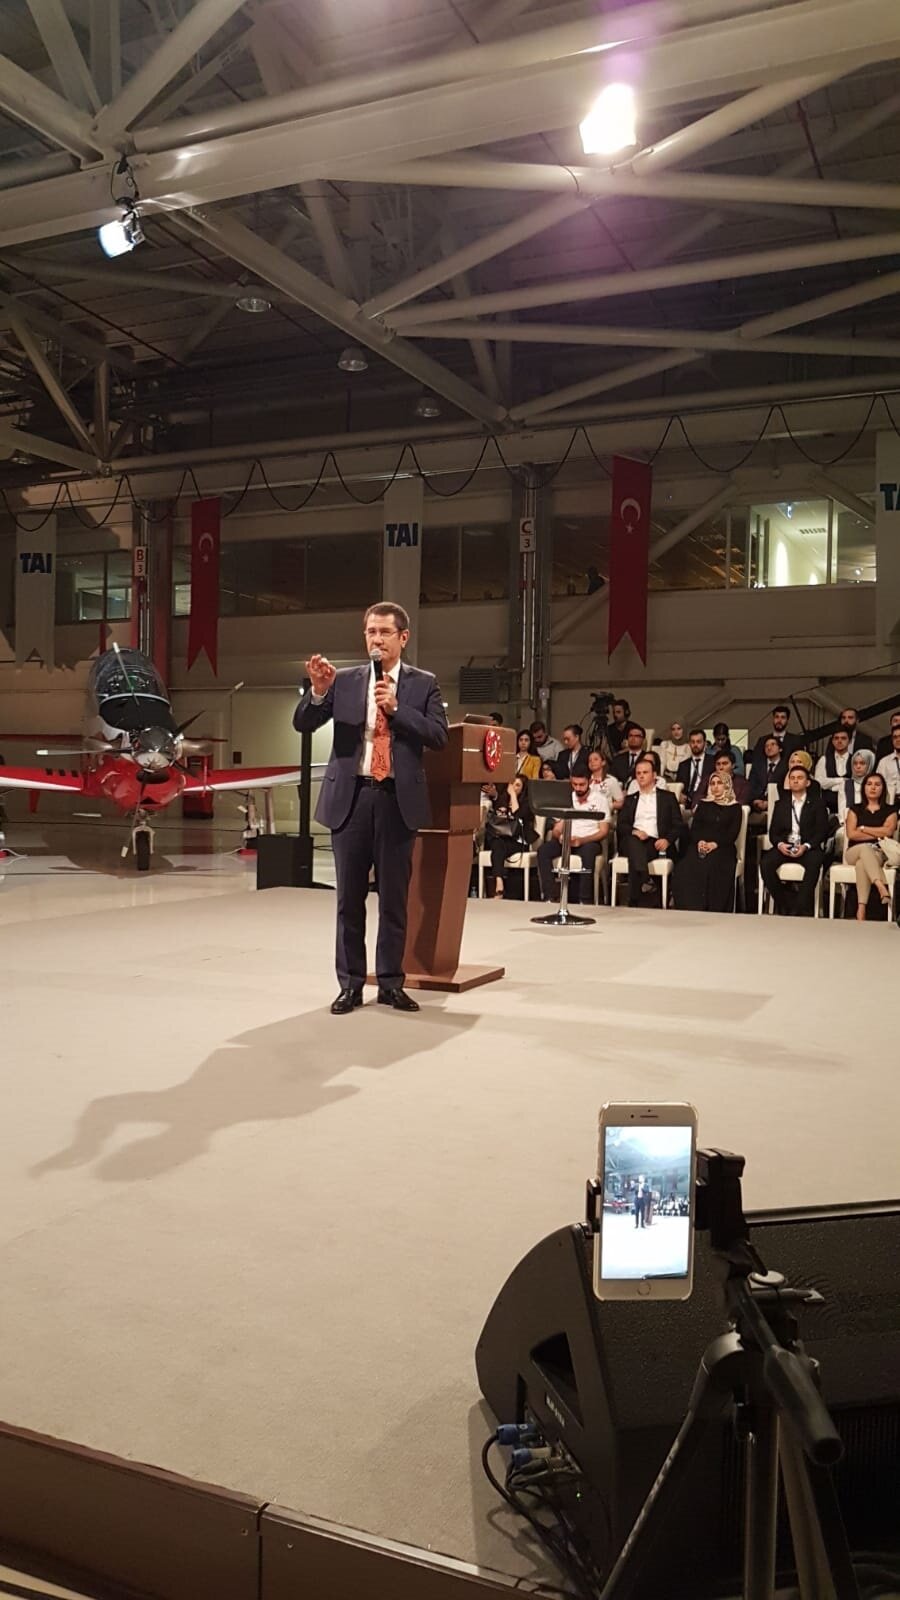 Savunma Bakanı Nurettin Canikli de programda bir konuşma yaptı.